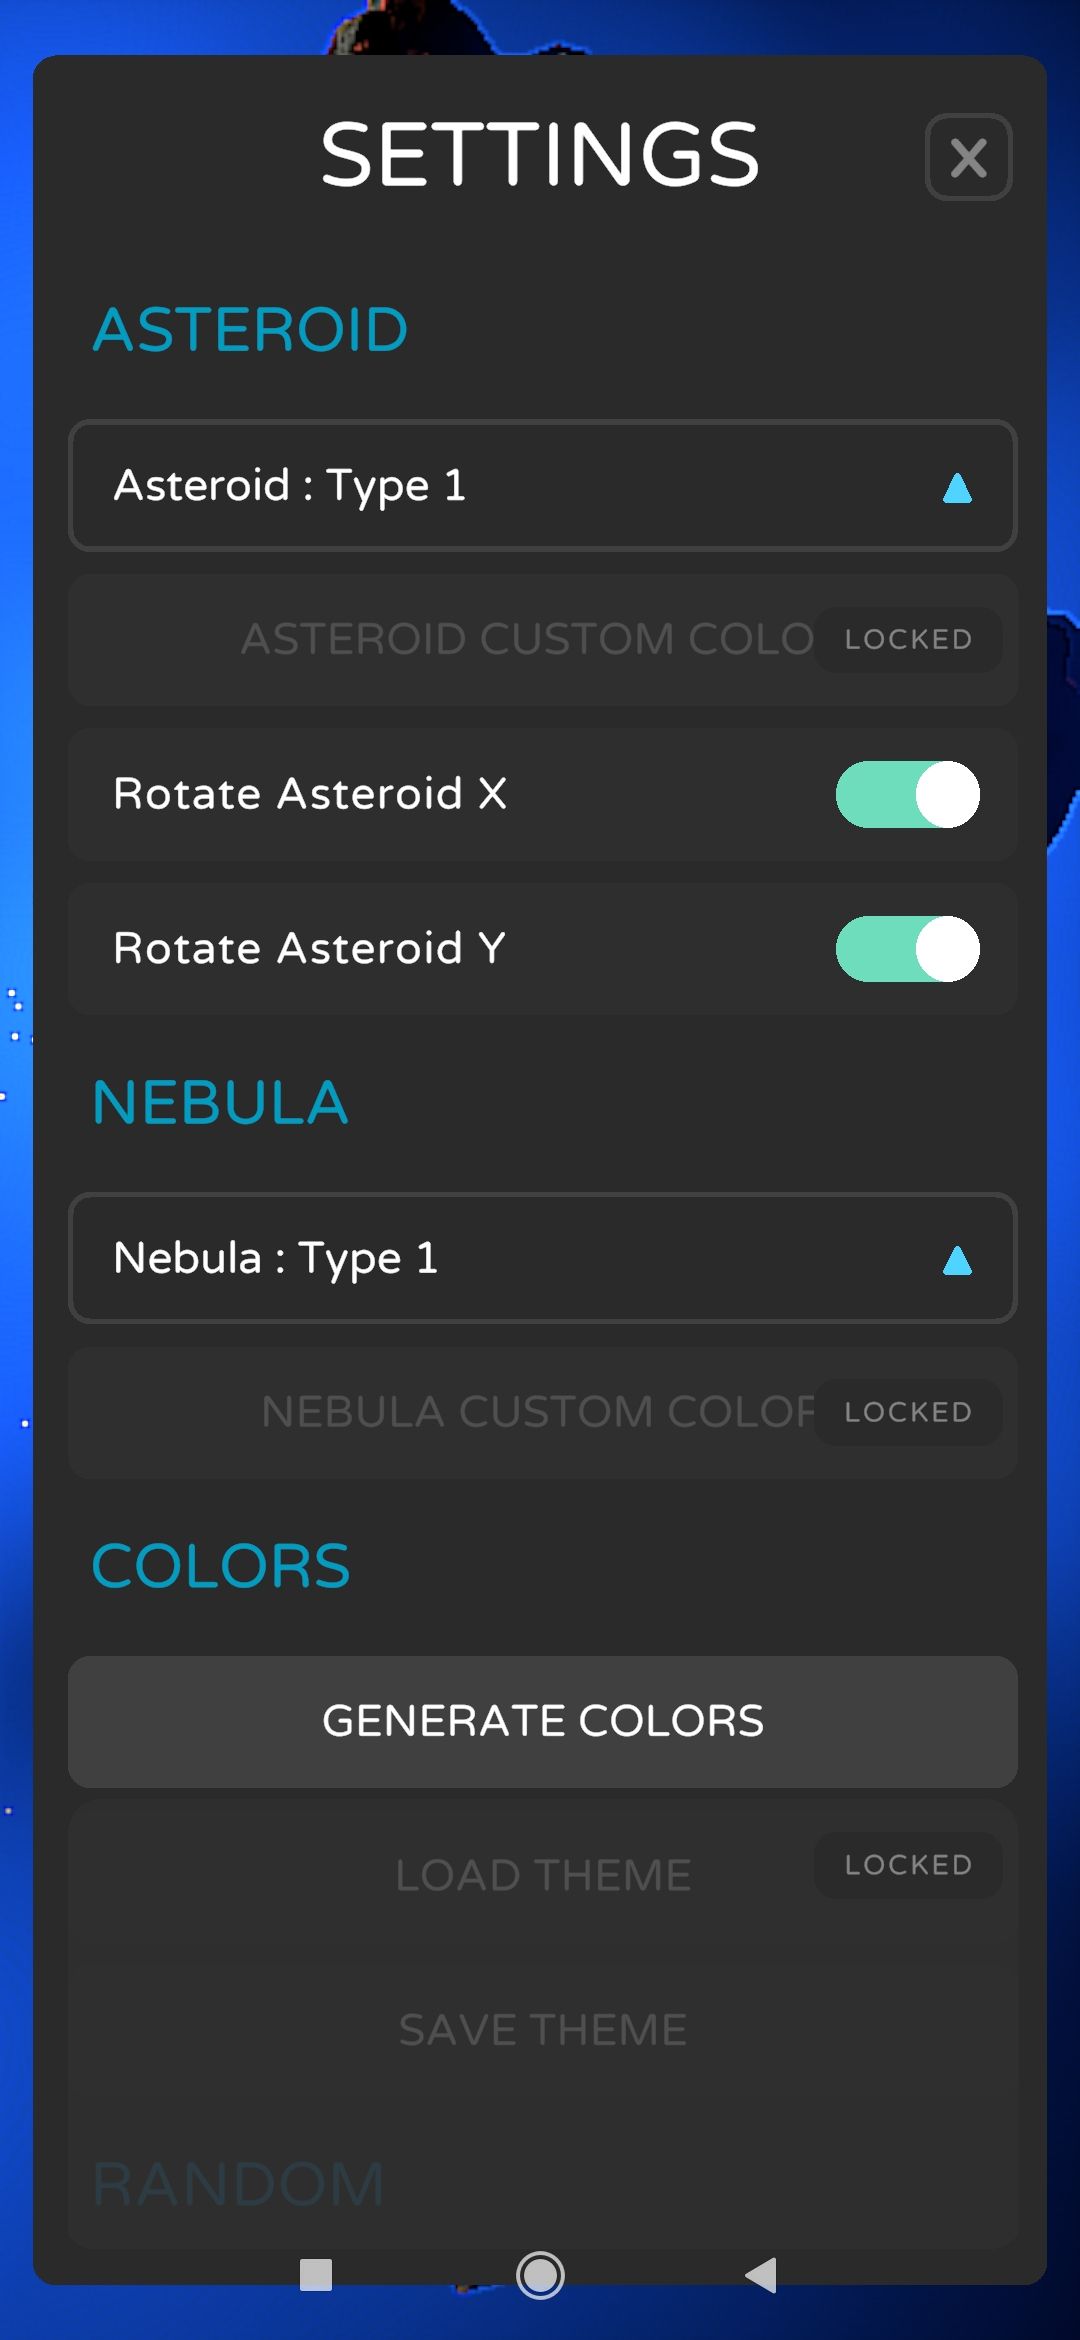 ASTEROID App settings